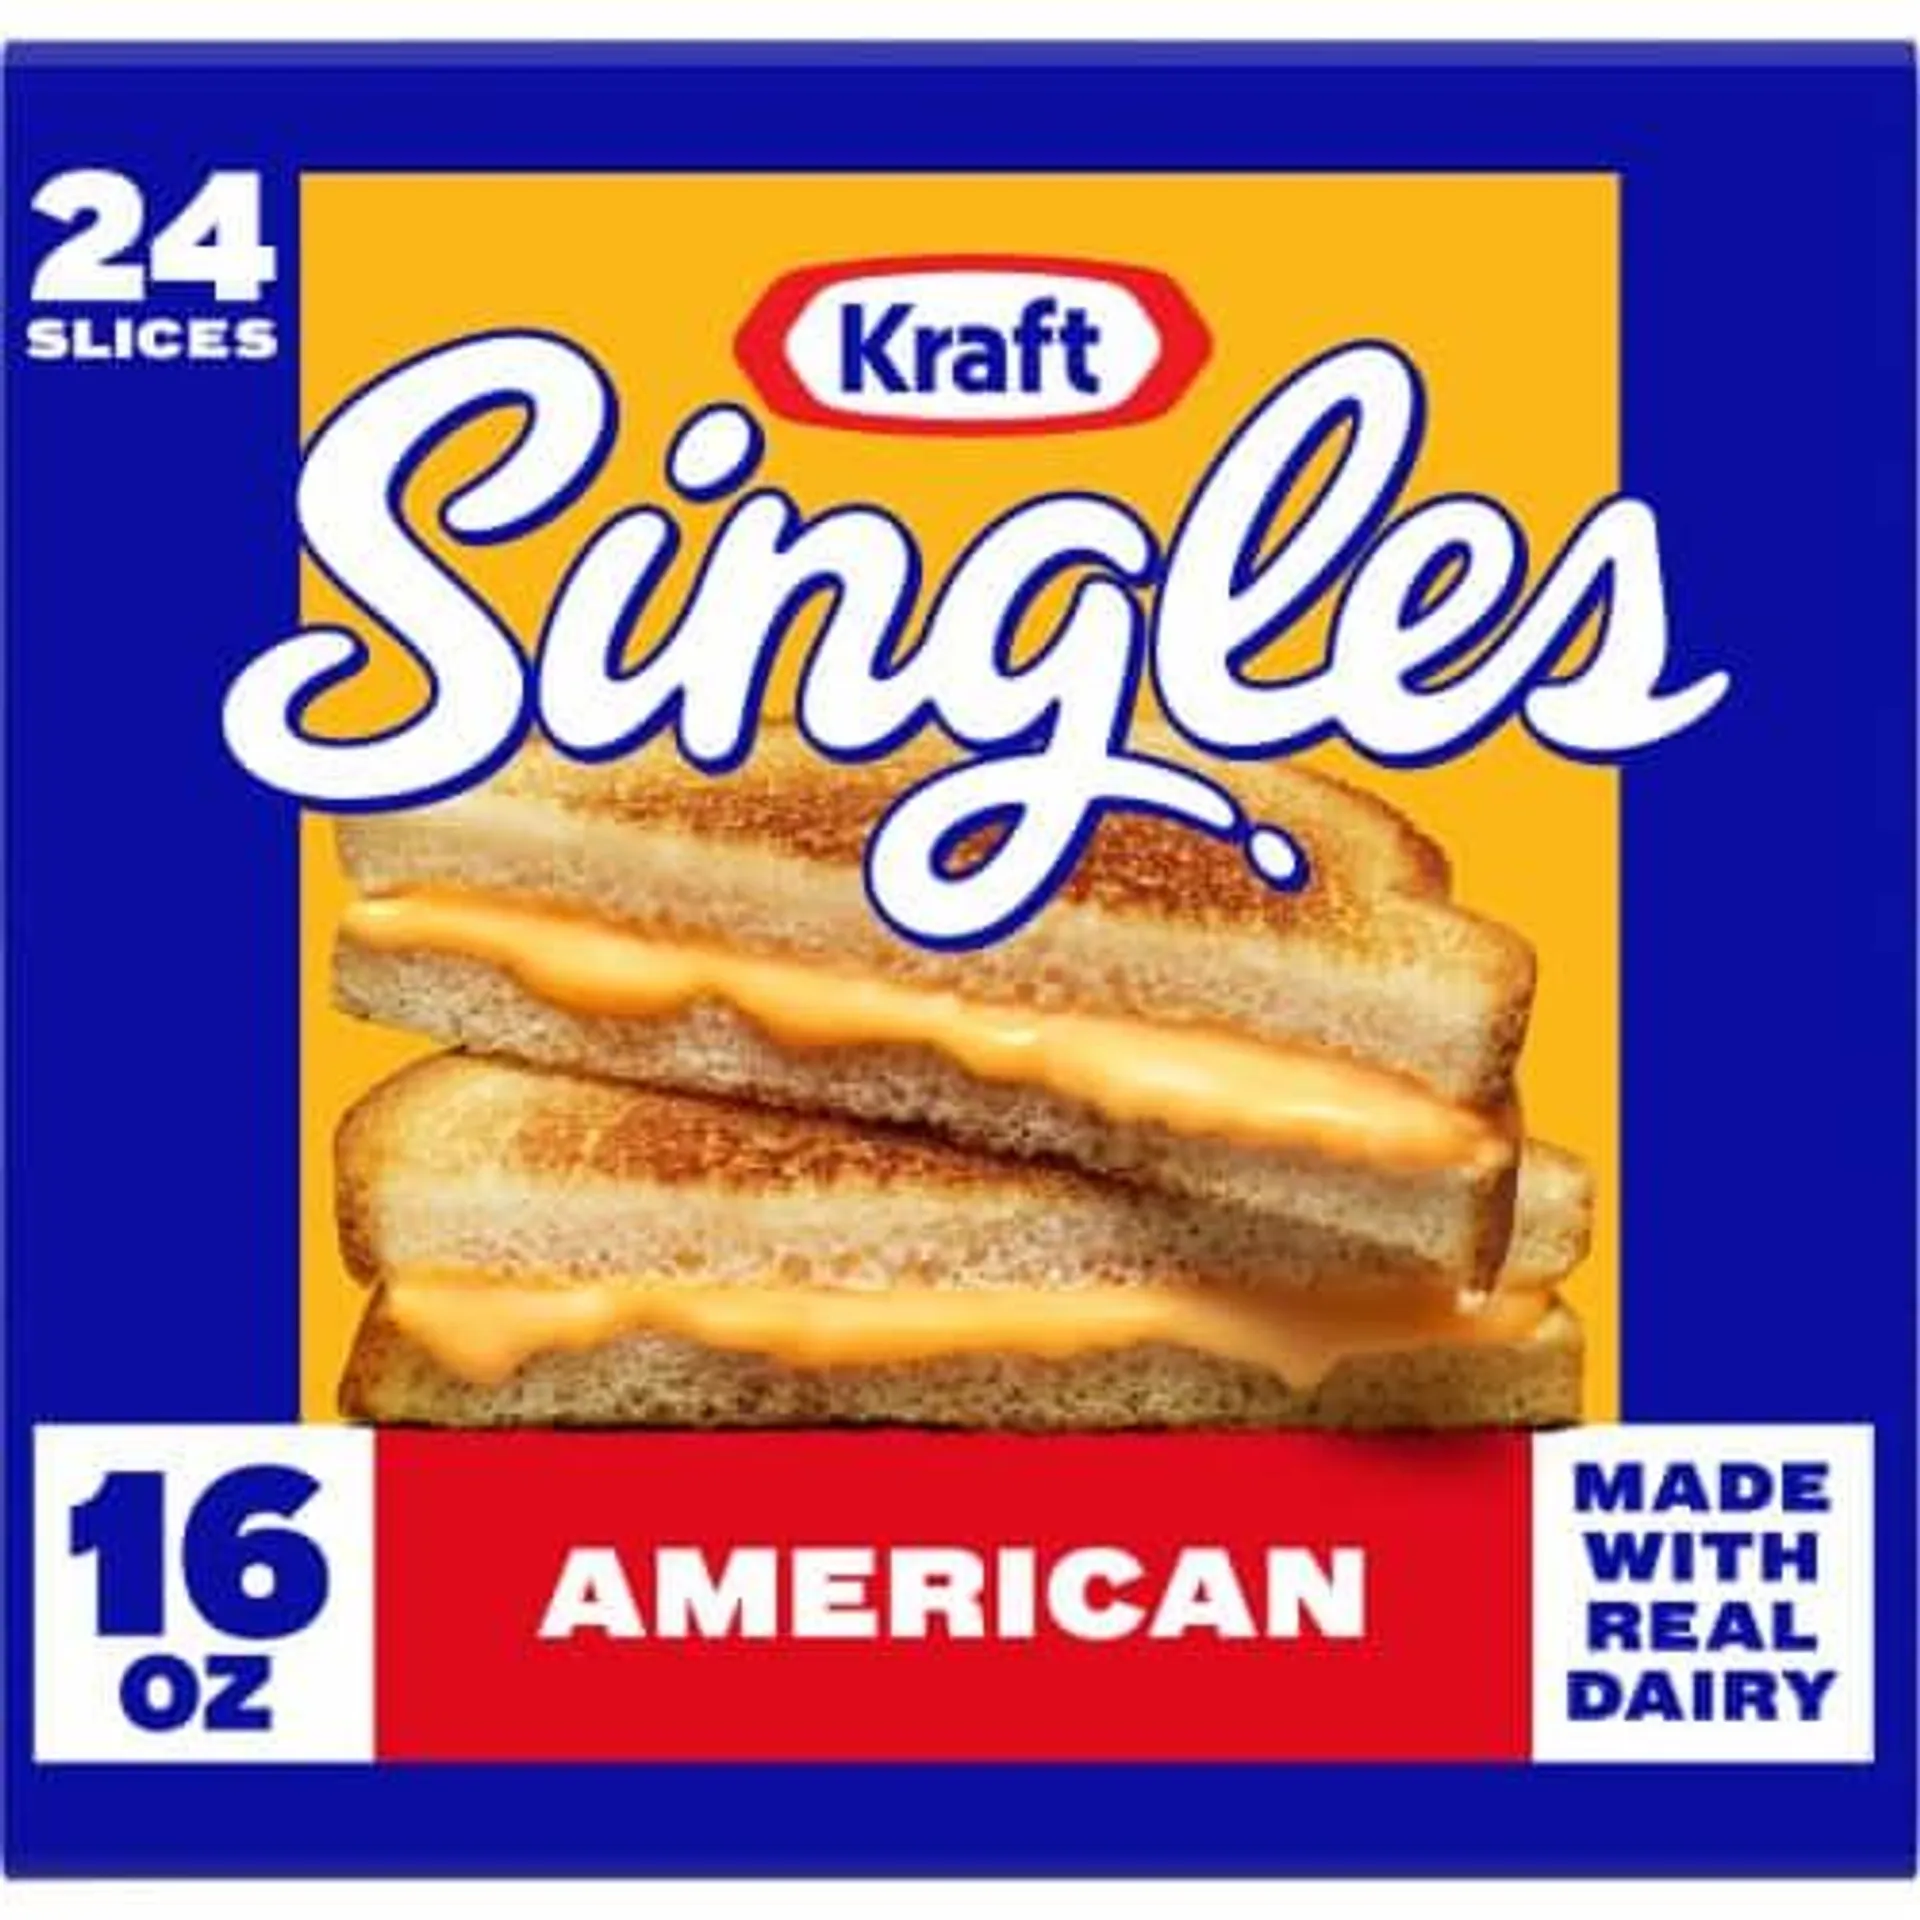 Kraft Singles American Sliced Cheese